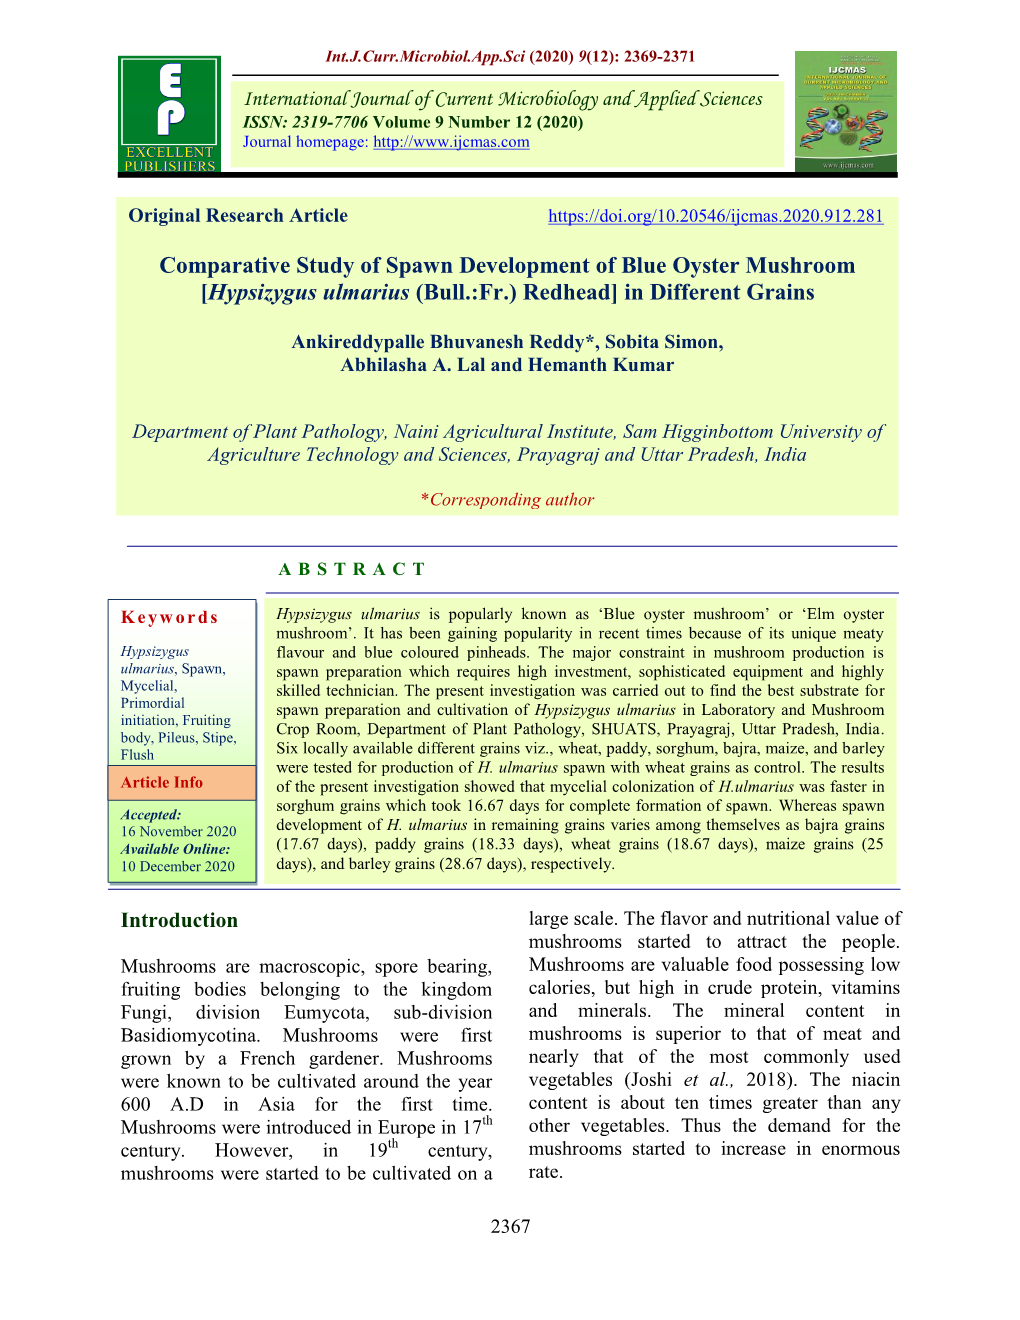 Comparative Study of Spawn Development of Blue Oyster Mushroom [Hypsizygus Ulmarius (Bull.:Fr.) Redhead] in Different Grains